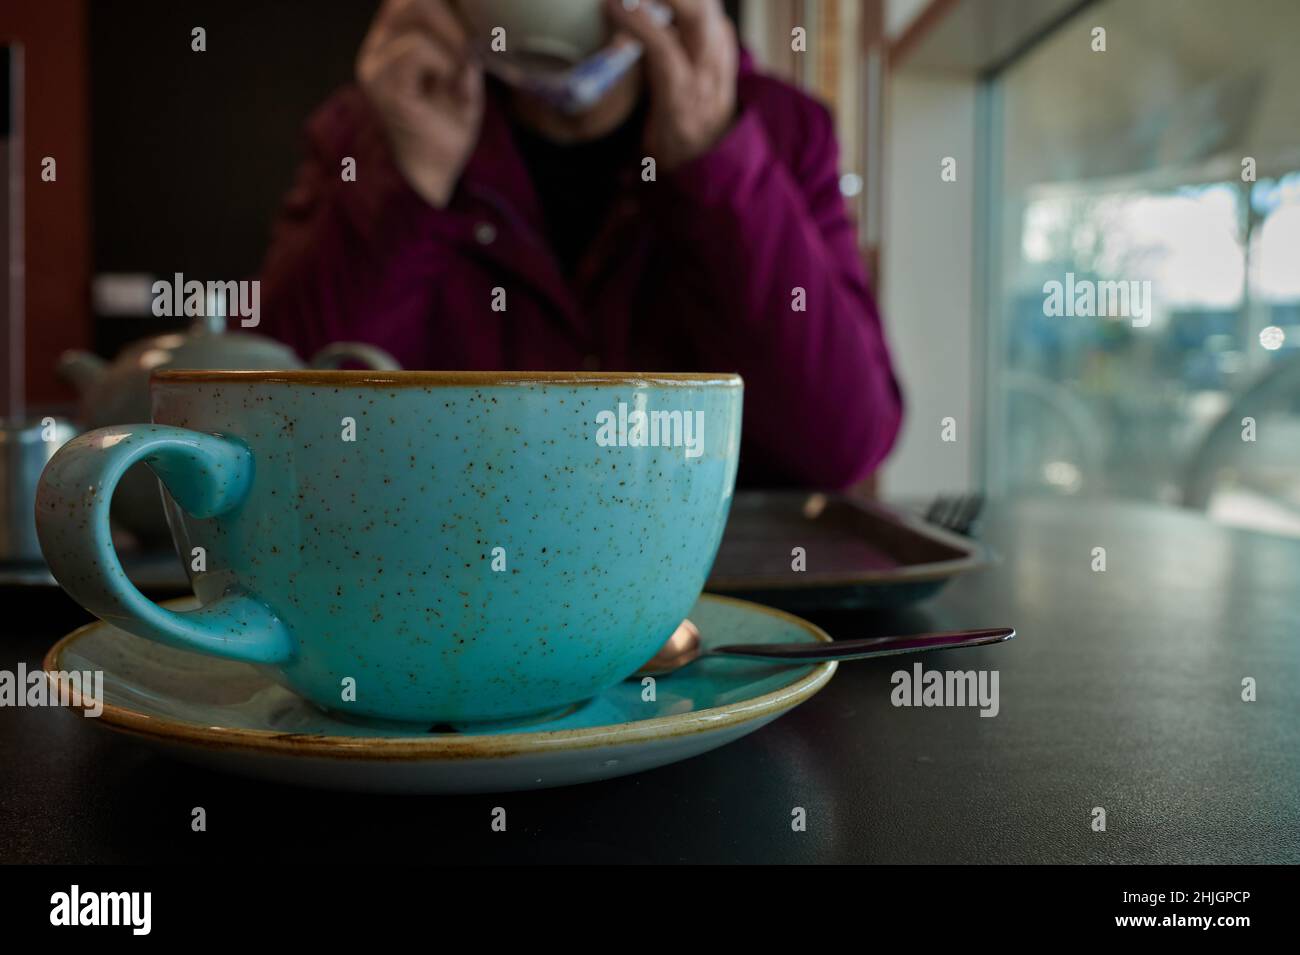 Nahaufnahme einer blauen Kaffeetasse und Untertasse mit Eierschaleneffekt auf dem Tisch im Innenbereich mit einer Person im Hintergrund, die nicht mehr scharf ist Stockfoto